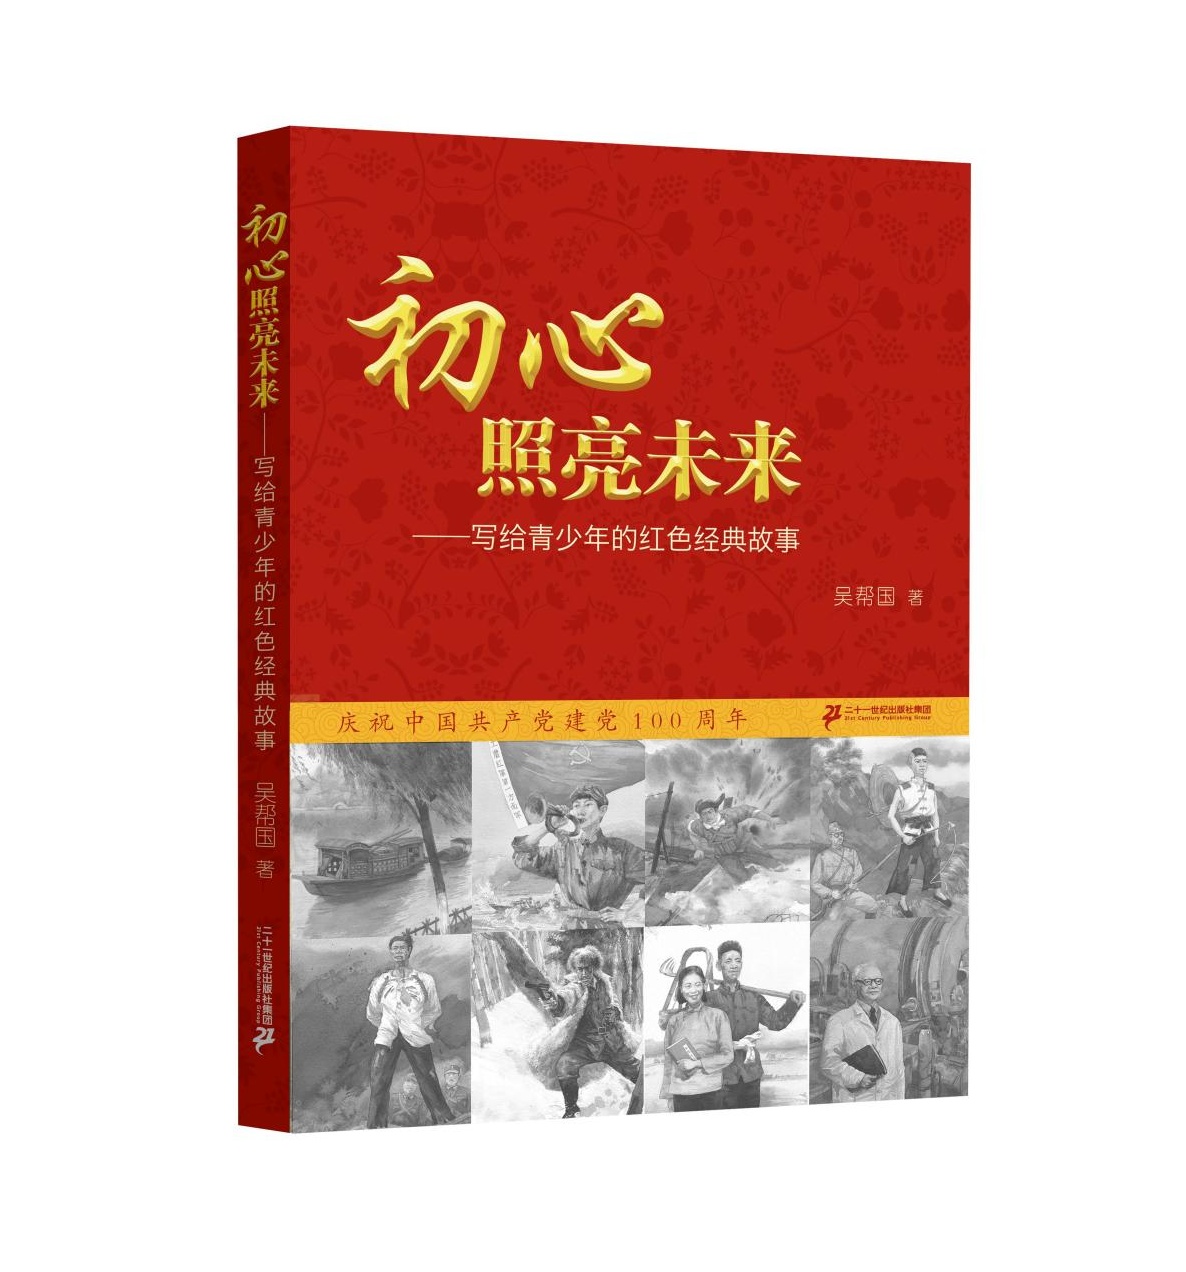 吴帮国著，二十一世纪出版社集团出版。